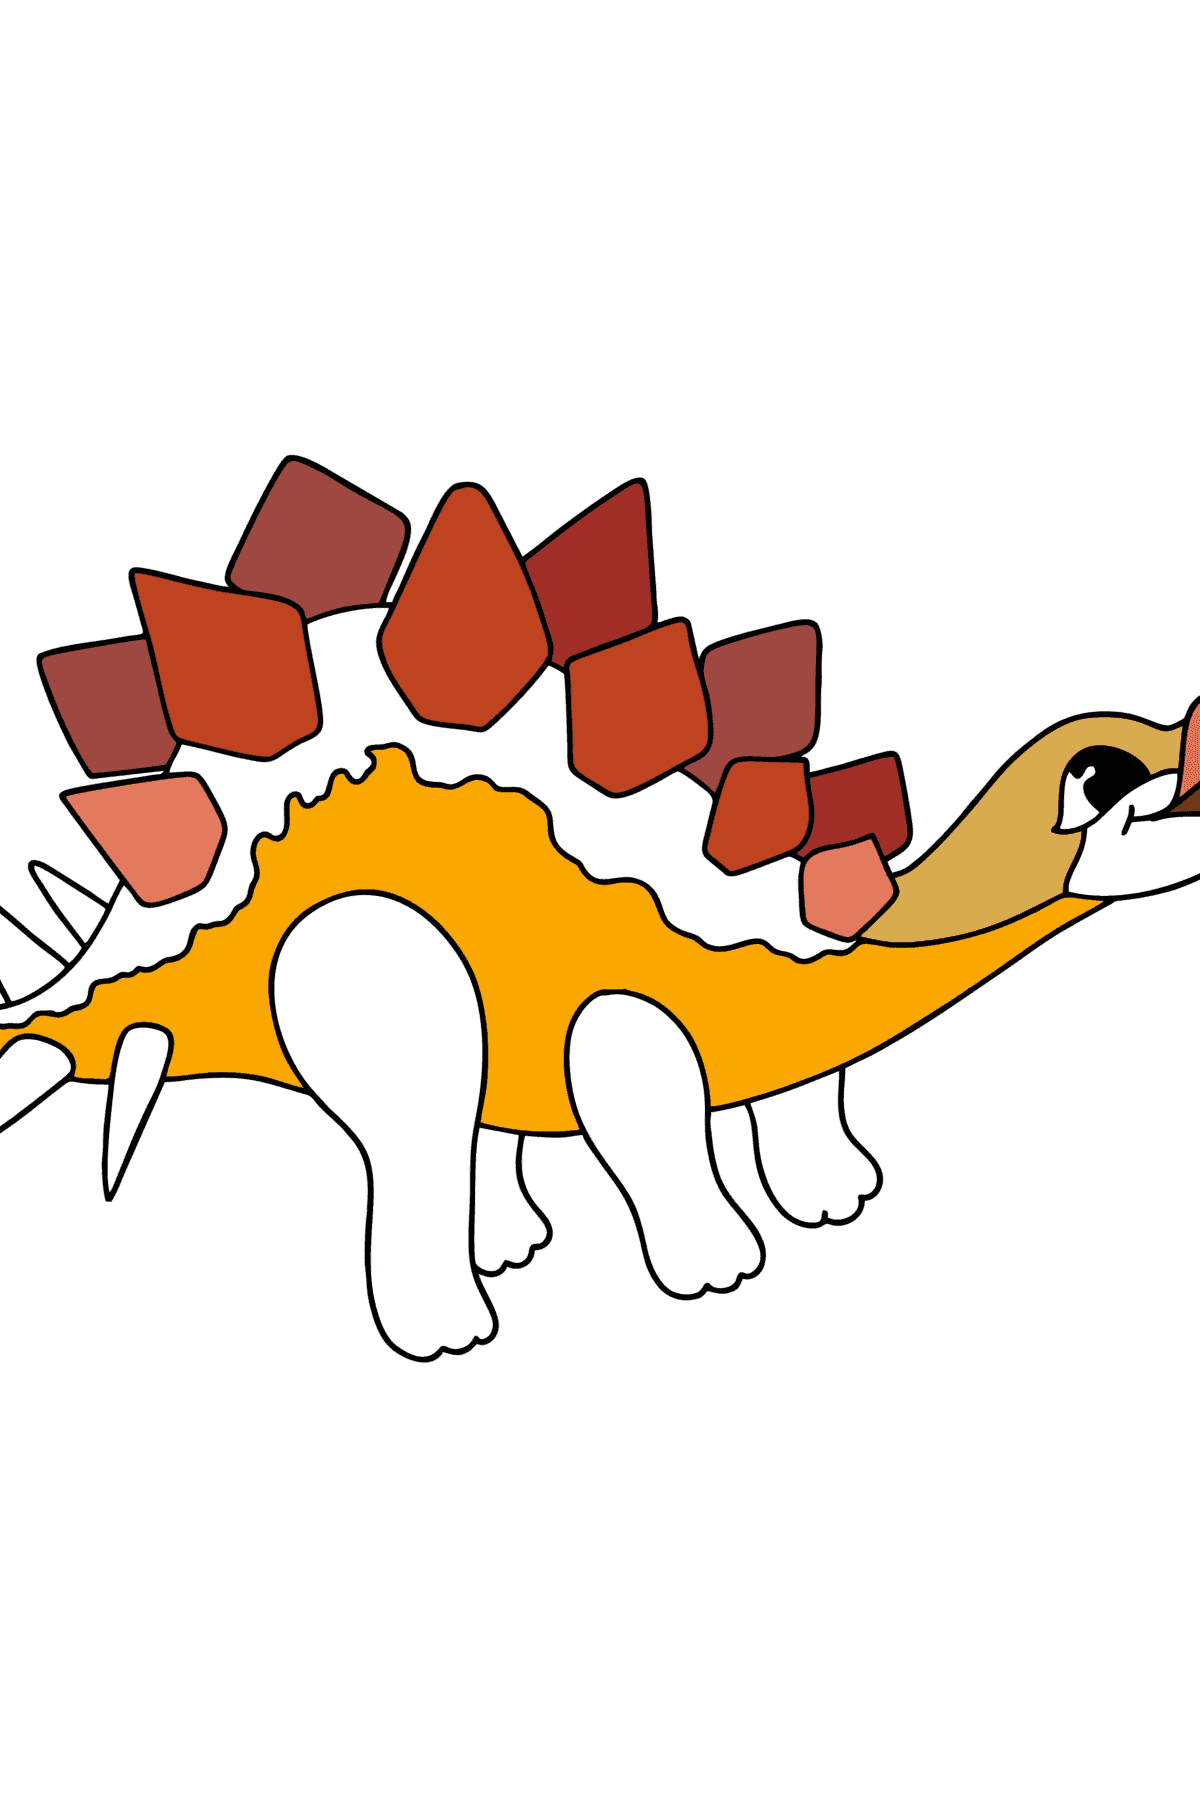 Målarbild stegosaurus - Målarbilder För barn